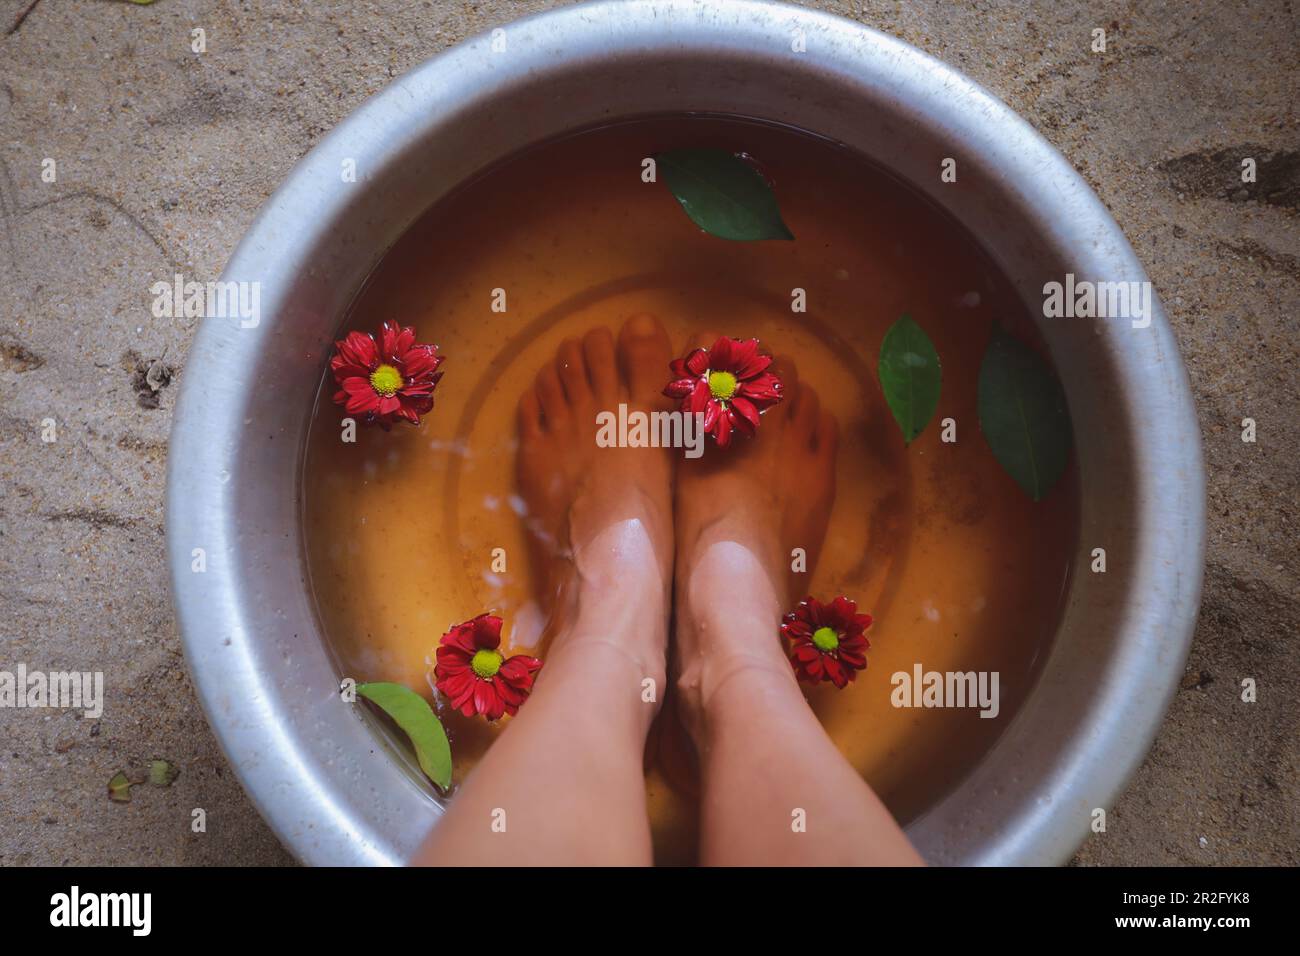 Les pieds dans l'eau, soin, détente au spa, concept de bien-être Banque D'Images